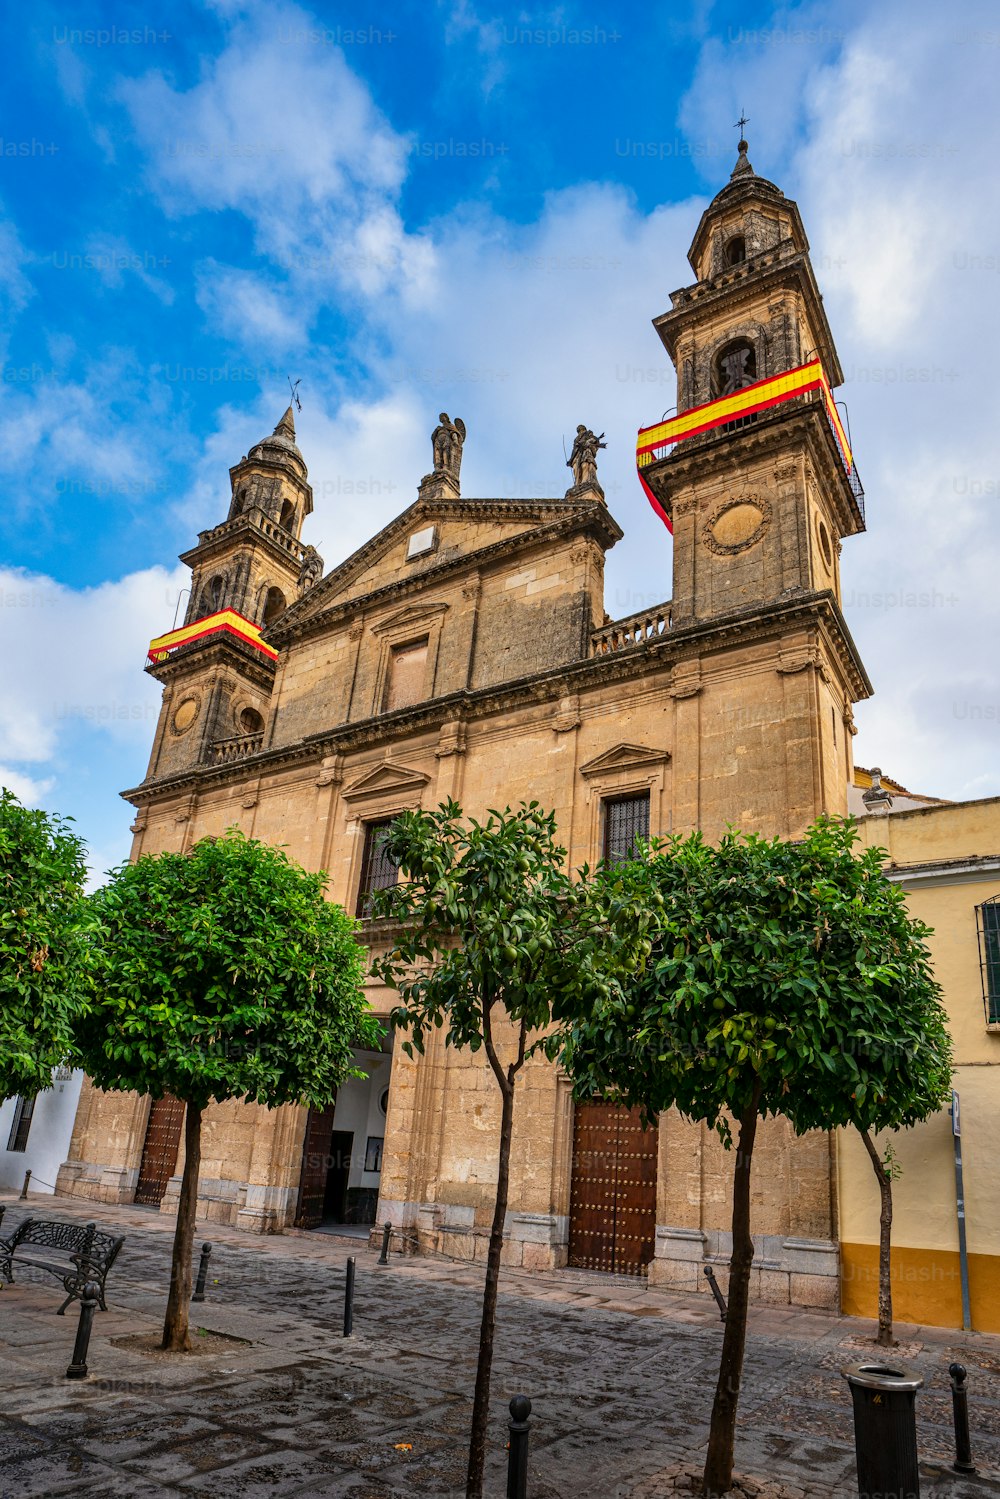 La iglesia Juramento de San Rafael en Córdoba, Andalucía, España.